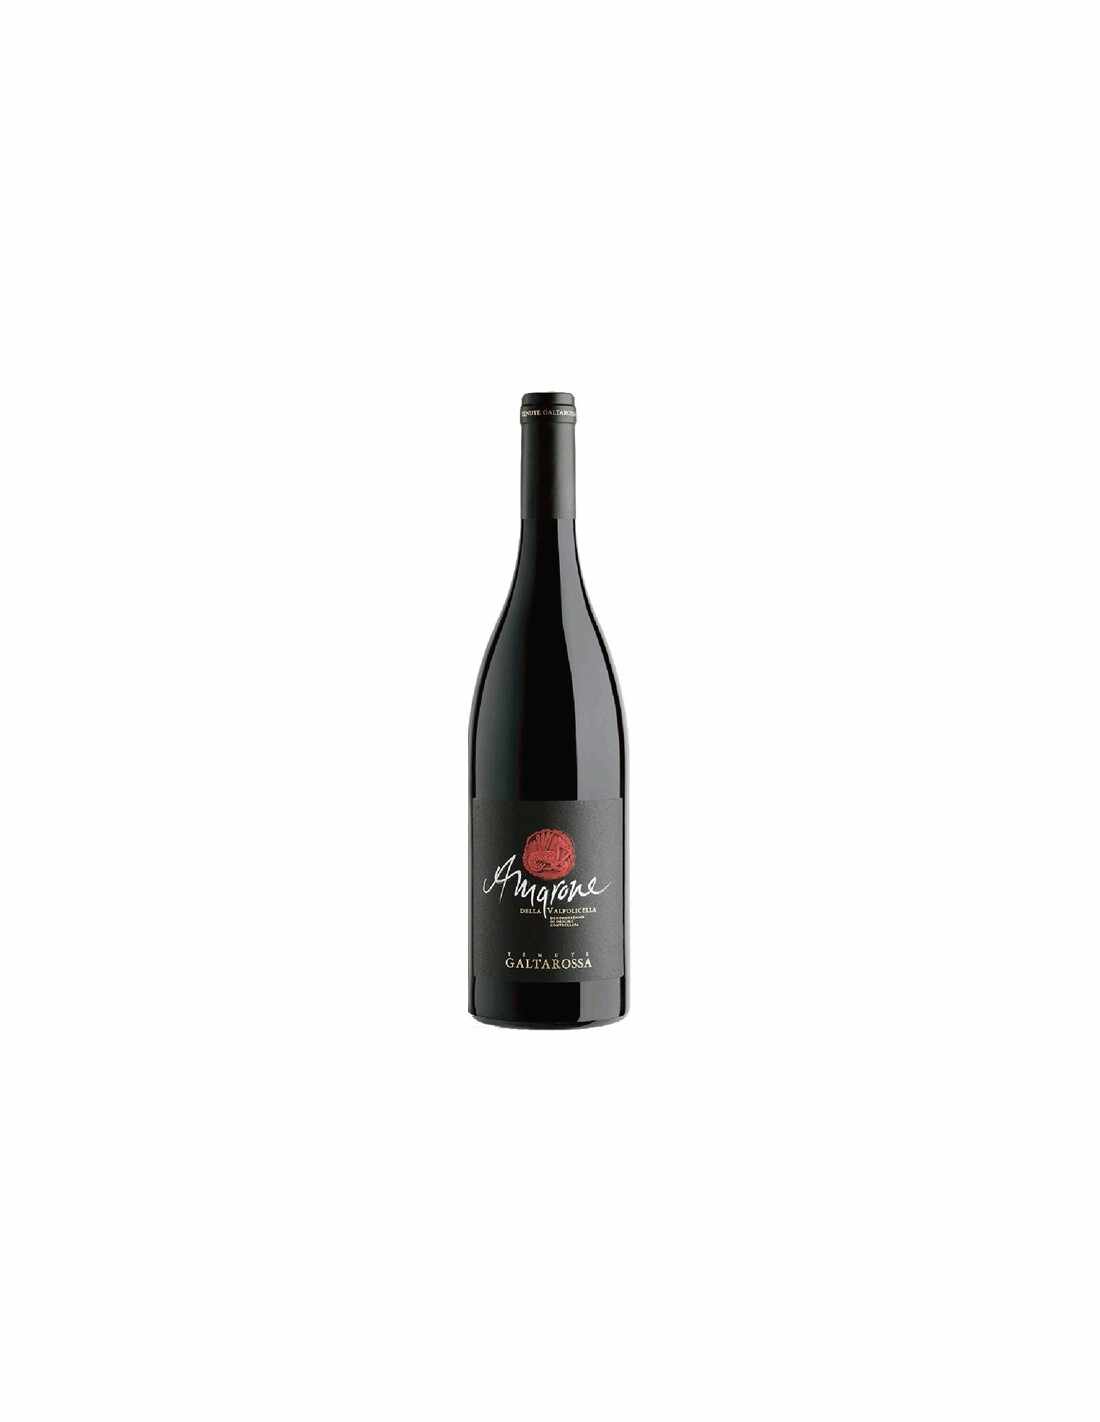 Vin rosu sec Amarone Galtarossa Della Valpolicella, 0.75L, 15% alc., Italia